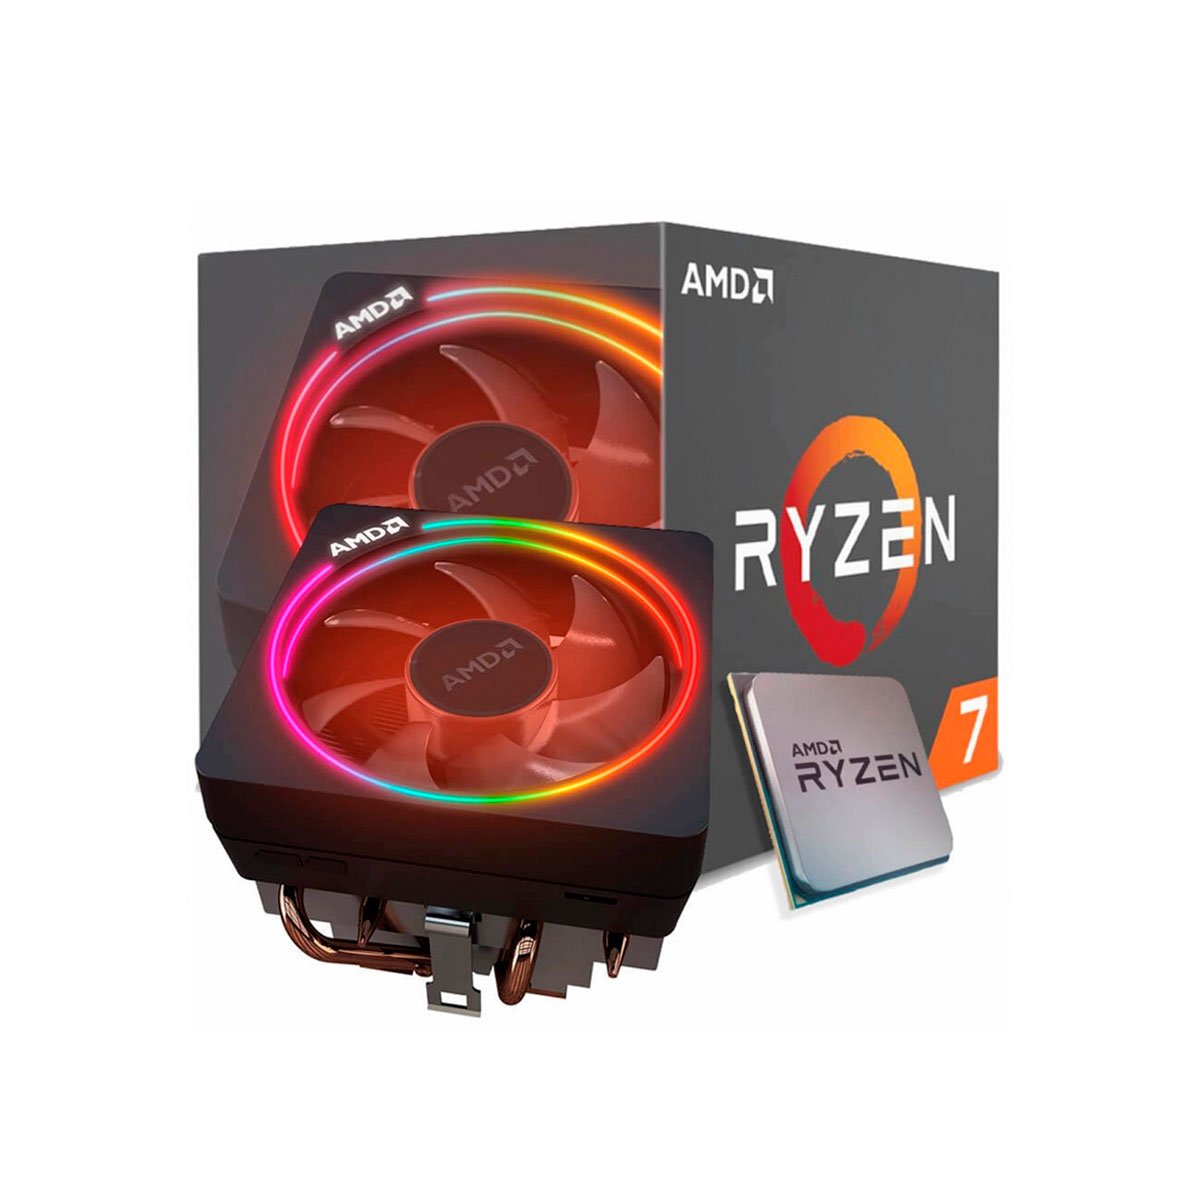 Ryzen 9 кулер. Кулер AMD Wraith Prism Ryzen RGB поверхность контакта.